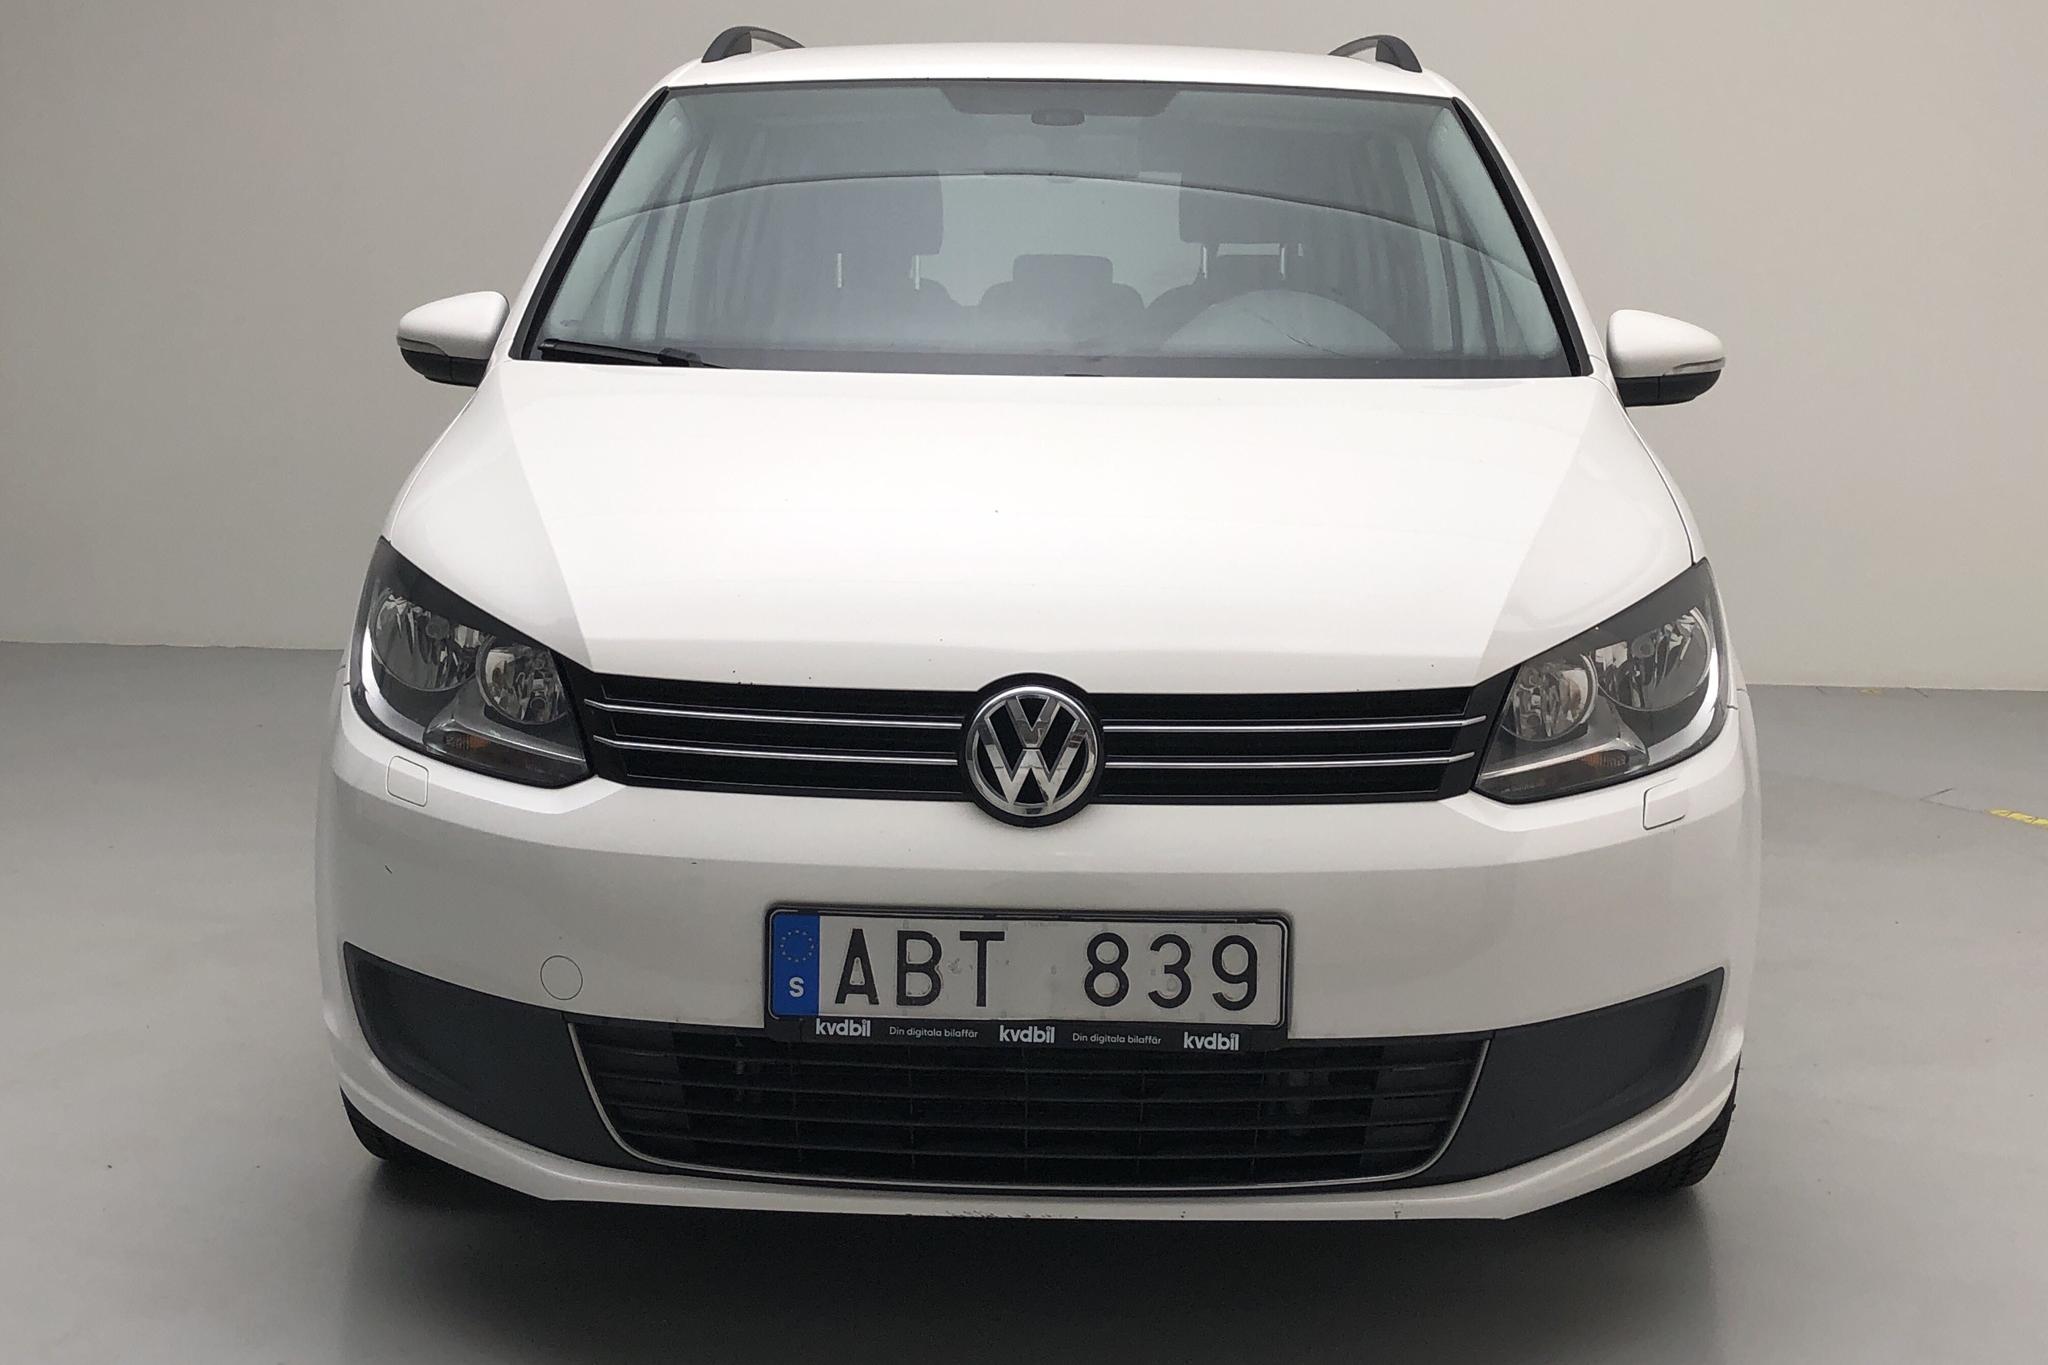 VW Touran 1.6 TDI BlueMotion Technology (105hk) - 236 660 km - Manual - white - 2013